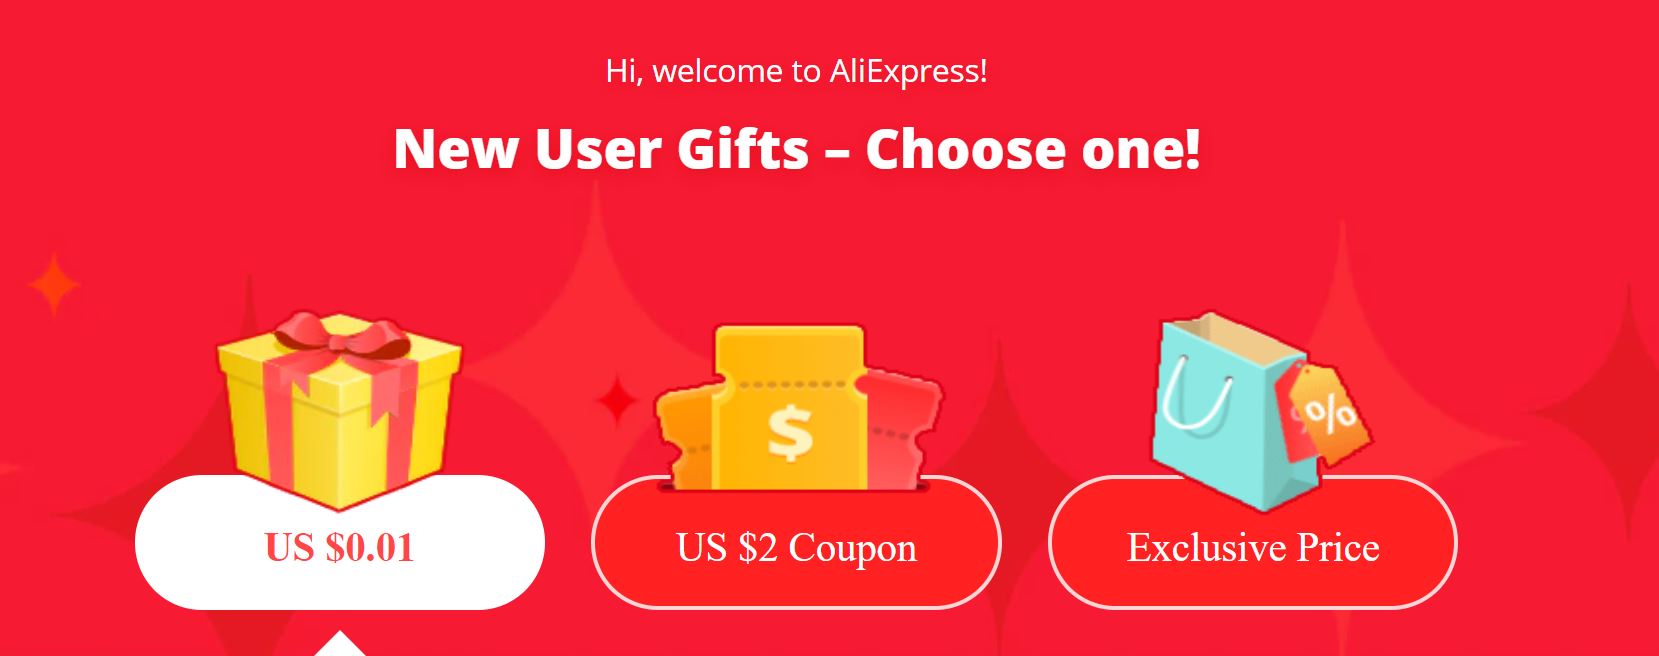 Promocja dla nowych użytkowników Aliexpress